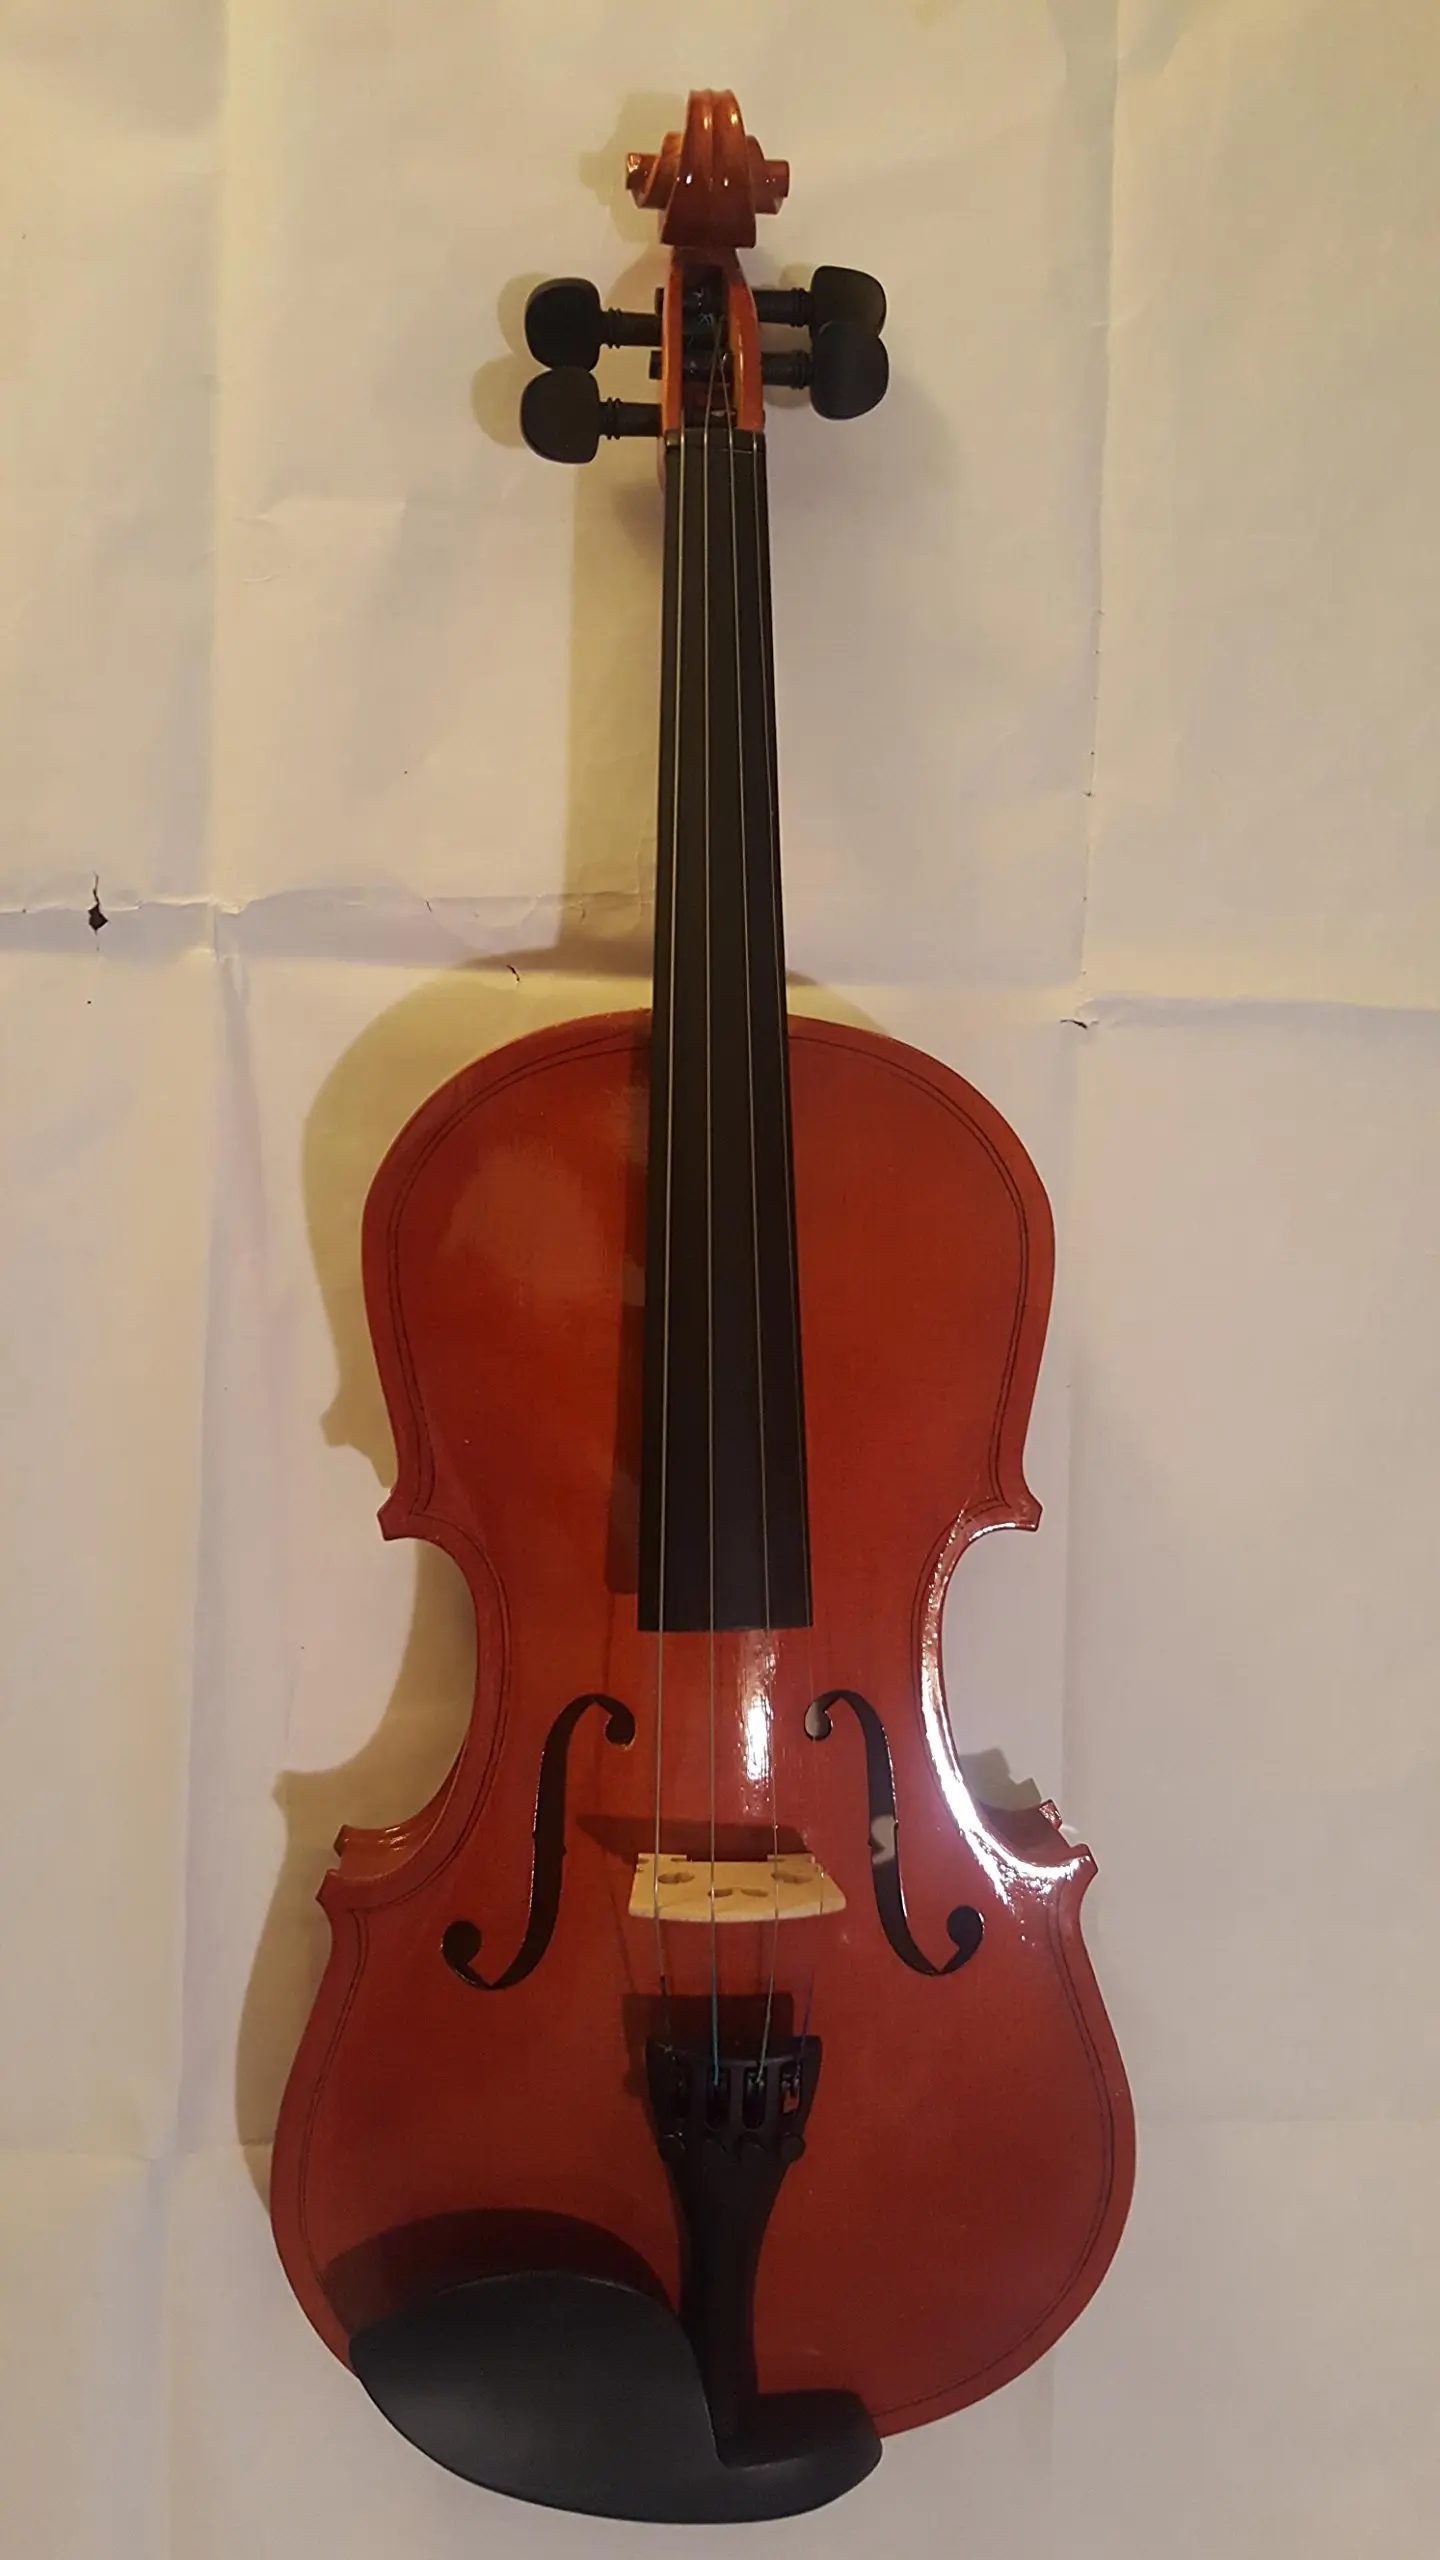 comprar violin barcelona - Cómo se llega a ser luthier de violonchelo